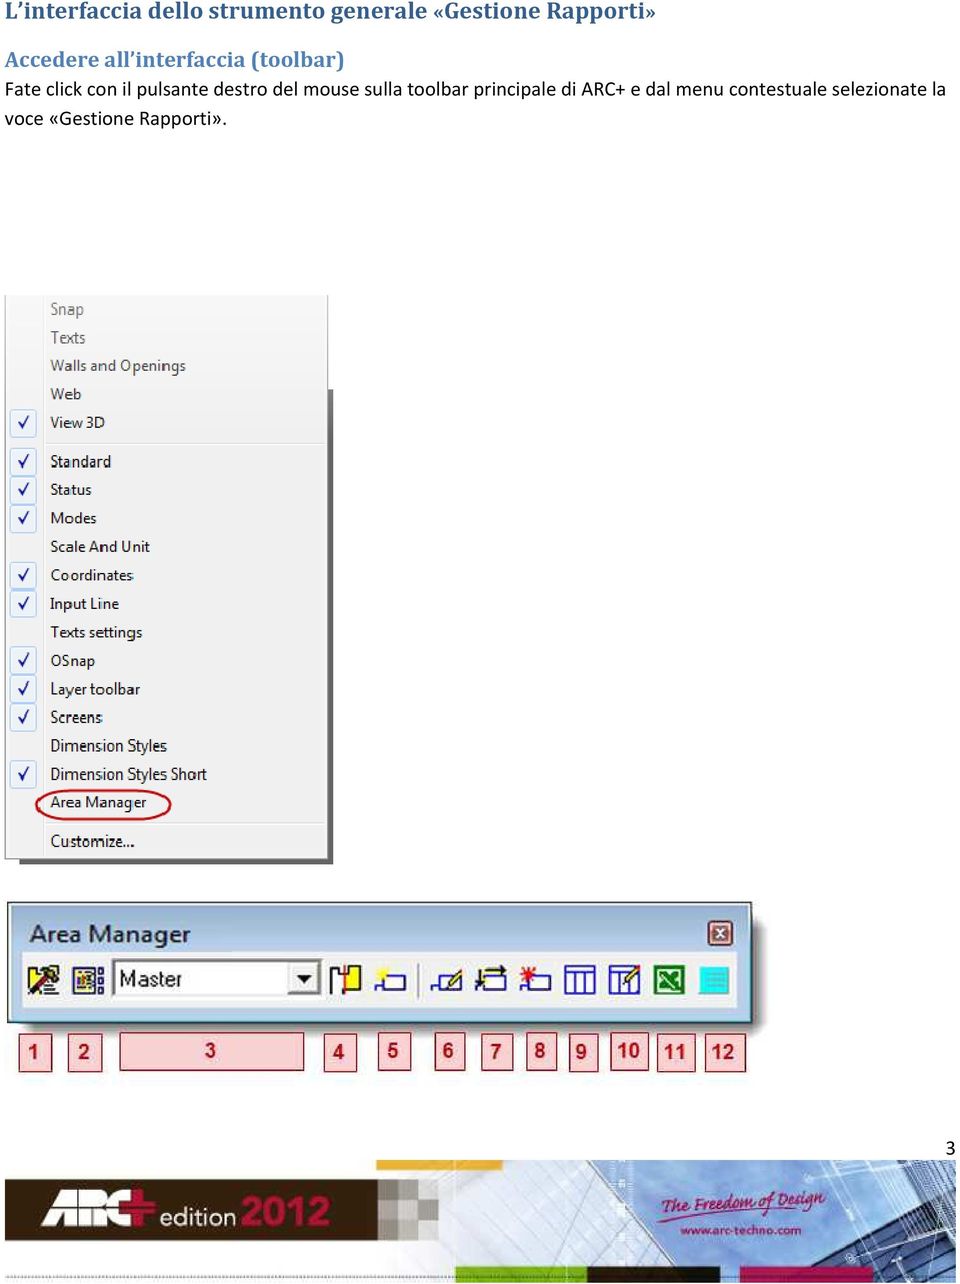 pulsante destro del mouse sulla toolbar principale di ARC+